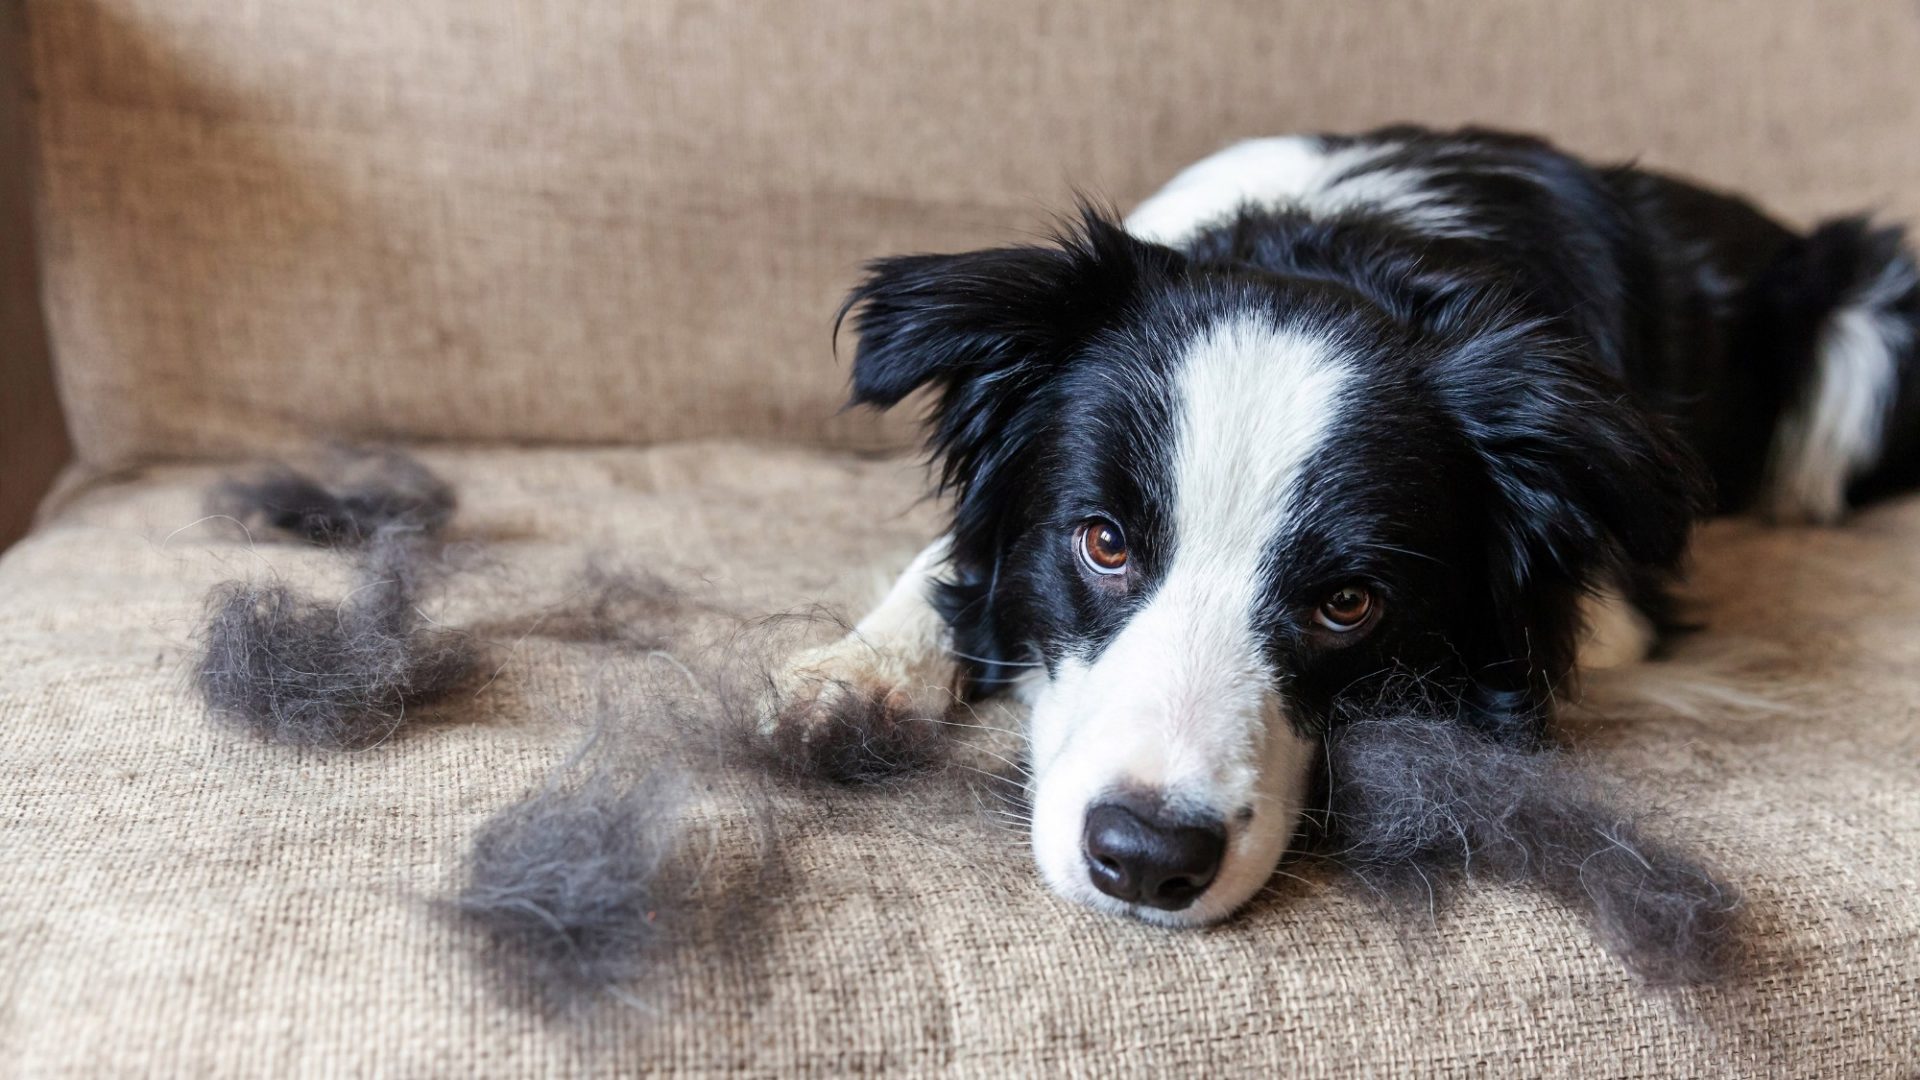 Ihr Hund haart gerade sehr stark? Kein Wunder, es ist Fellwechsel-Zeit! Wir verraten, warum die Fellpflege jetzt besonders wichtig ist.